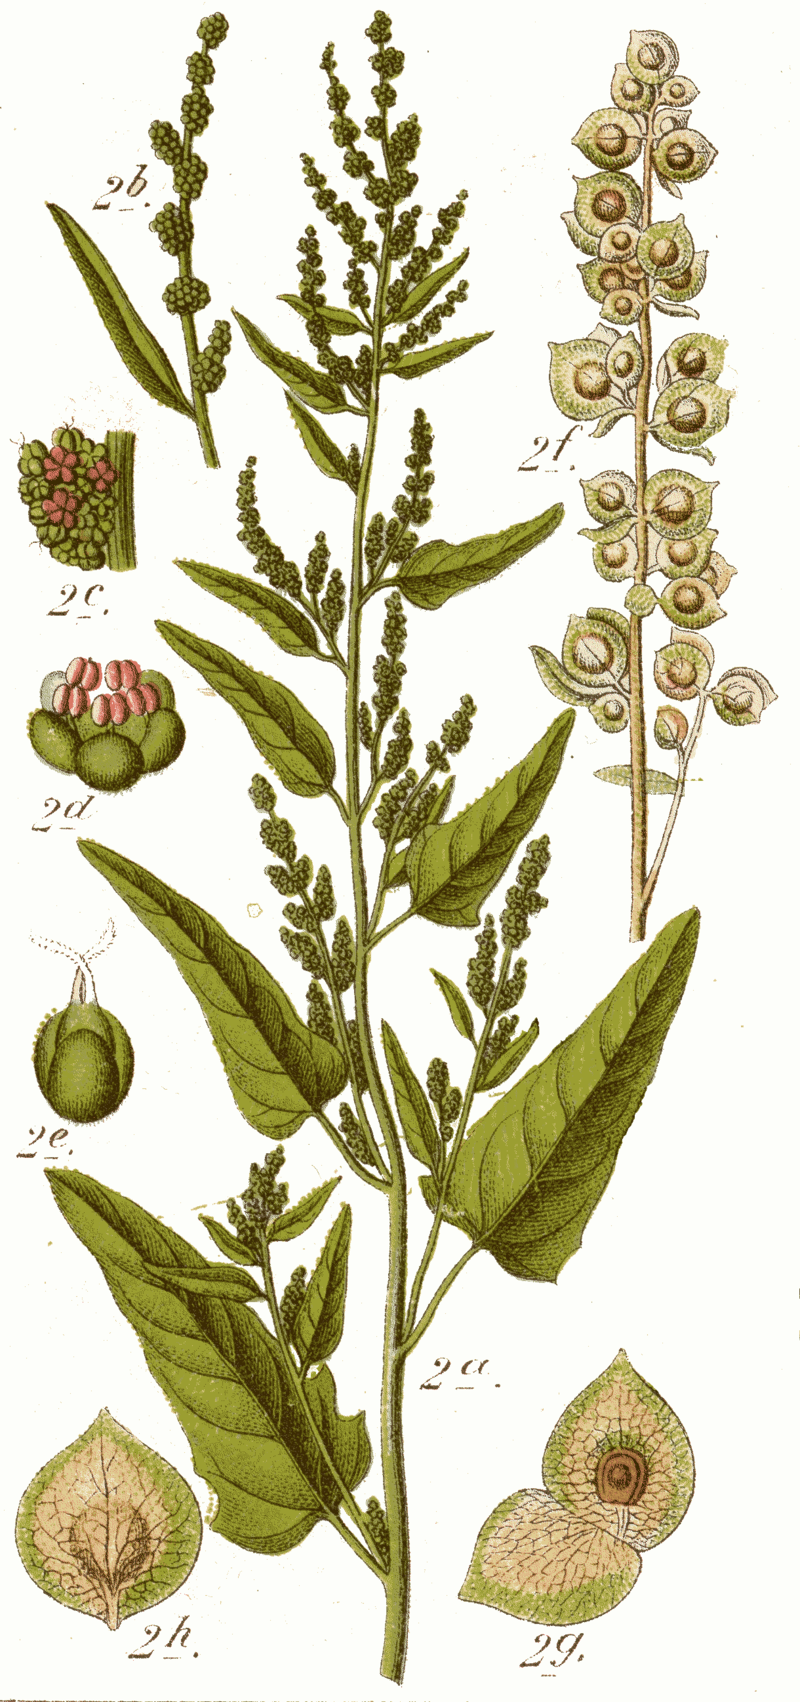 Melde Gartenmelde wie Spinat Historisches Blattgemüse 30 Samen